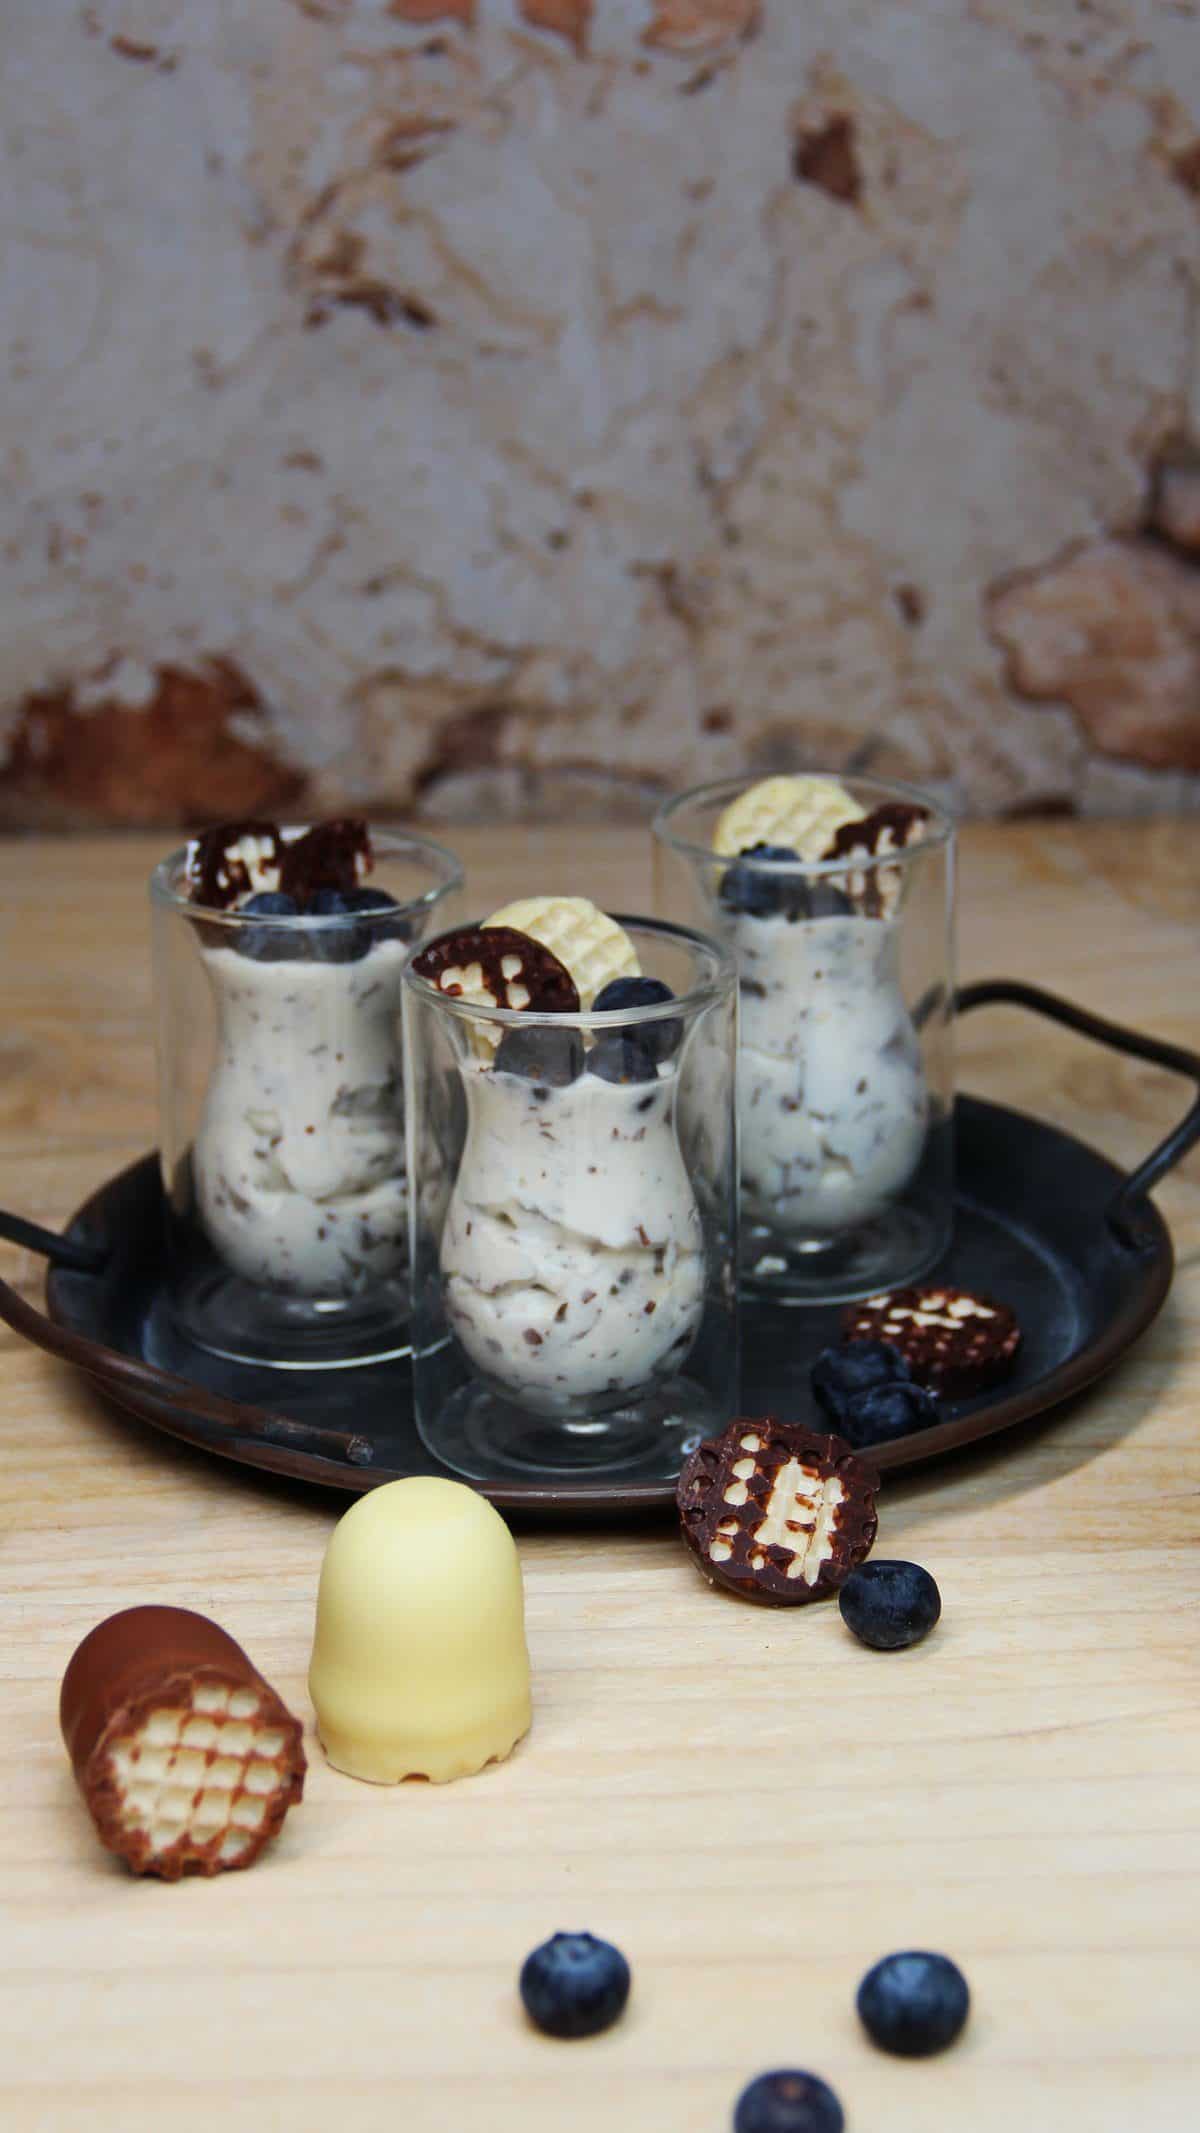 Dickmanns Dessert, in doppelwandigen Dessertgläsern auf einem Metall-Tablett